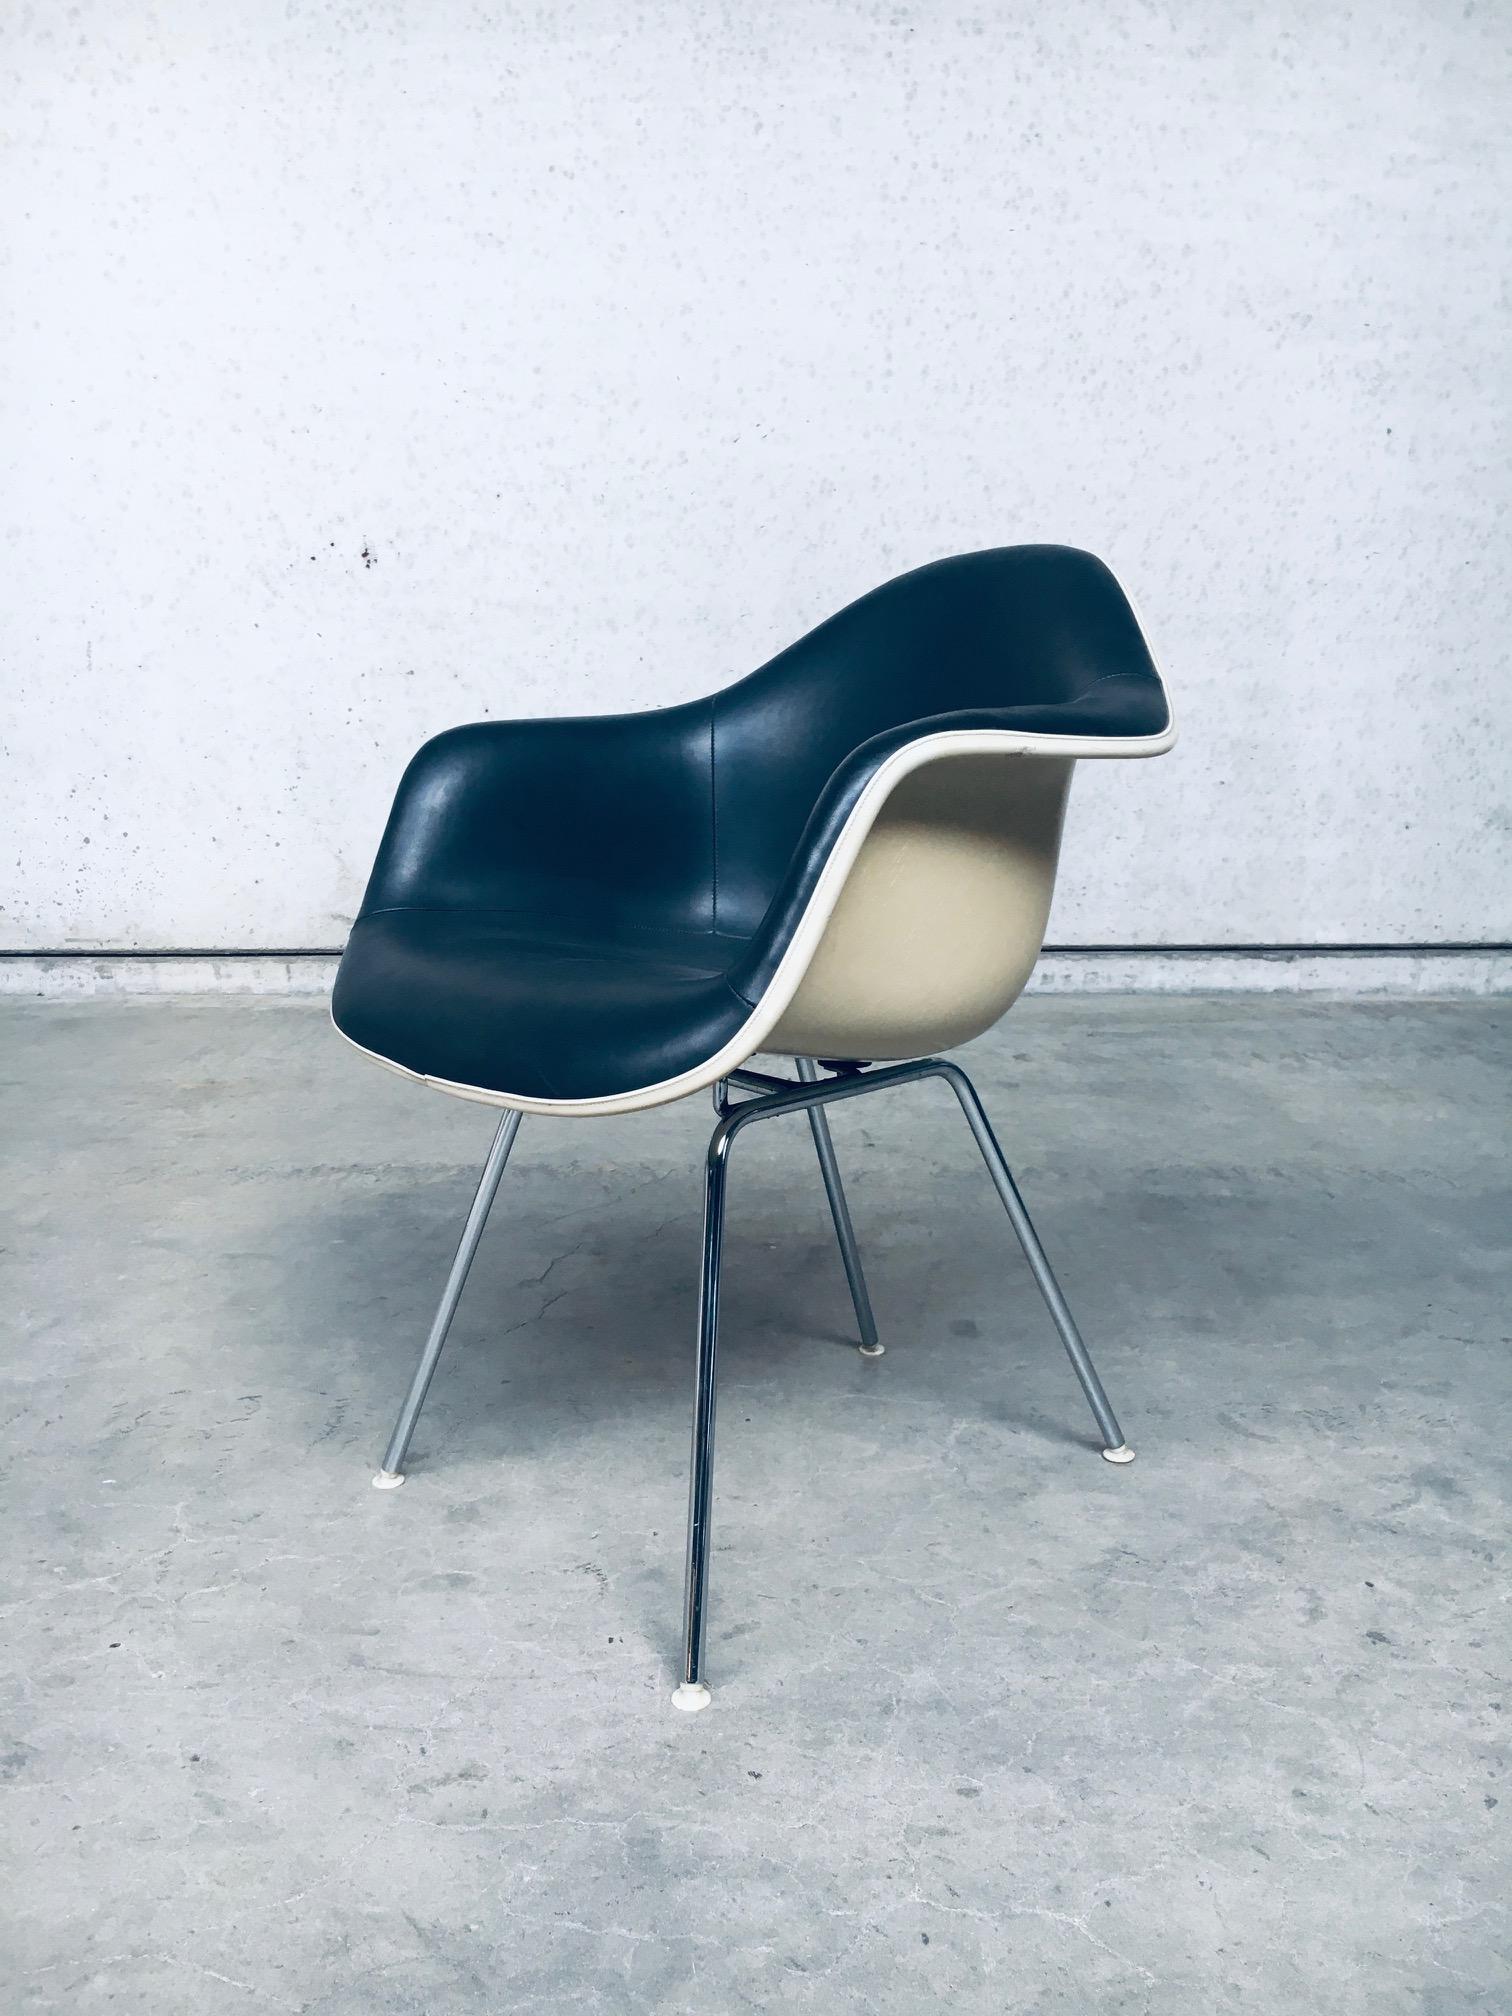 Vintage Mid-Century Modern Design schwarzes Leder DAX Seil Kante Fiberglas Zenith Shell Sessel von Charles & Ray Eames für Herman Miller, in den USA 1960er Jahren gemacht. Dunkelgrau/schwarzes Leder auf cremeweißer Glasfaserschale Zenith mit